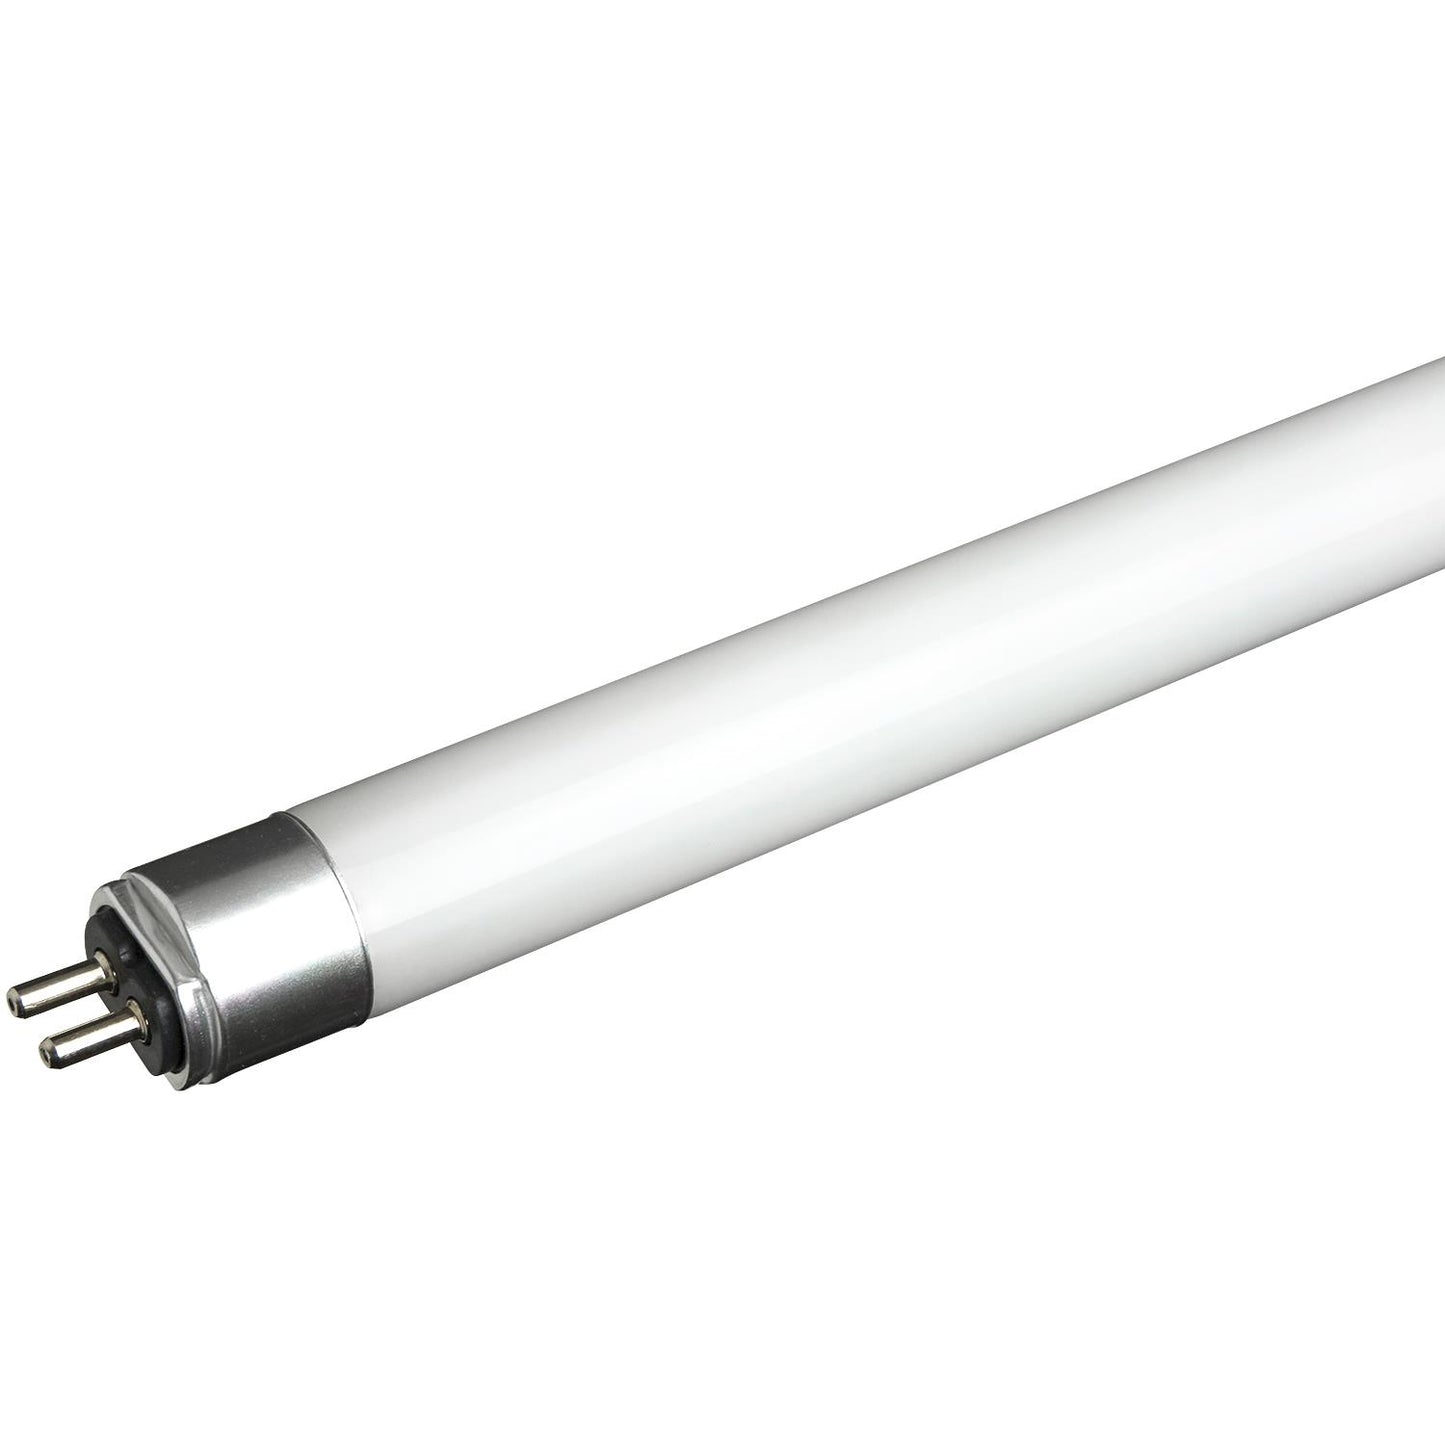 Sunlite T5/LED/2'/11W/IS/30K LED 11W 2 Foot Instant Start T5 Tube Light Fixtures, 3000K Warm White Light, Medium Bi-Pin (G13) Base